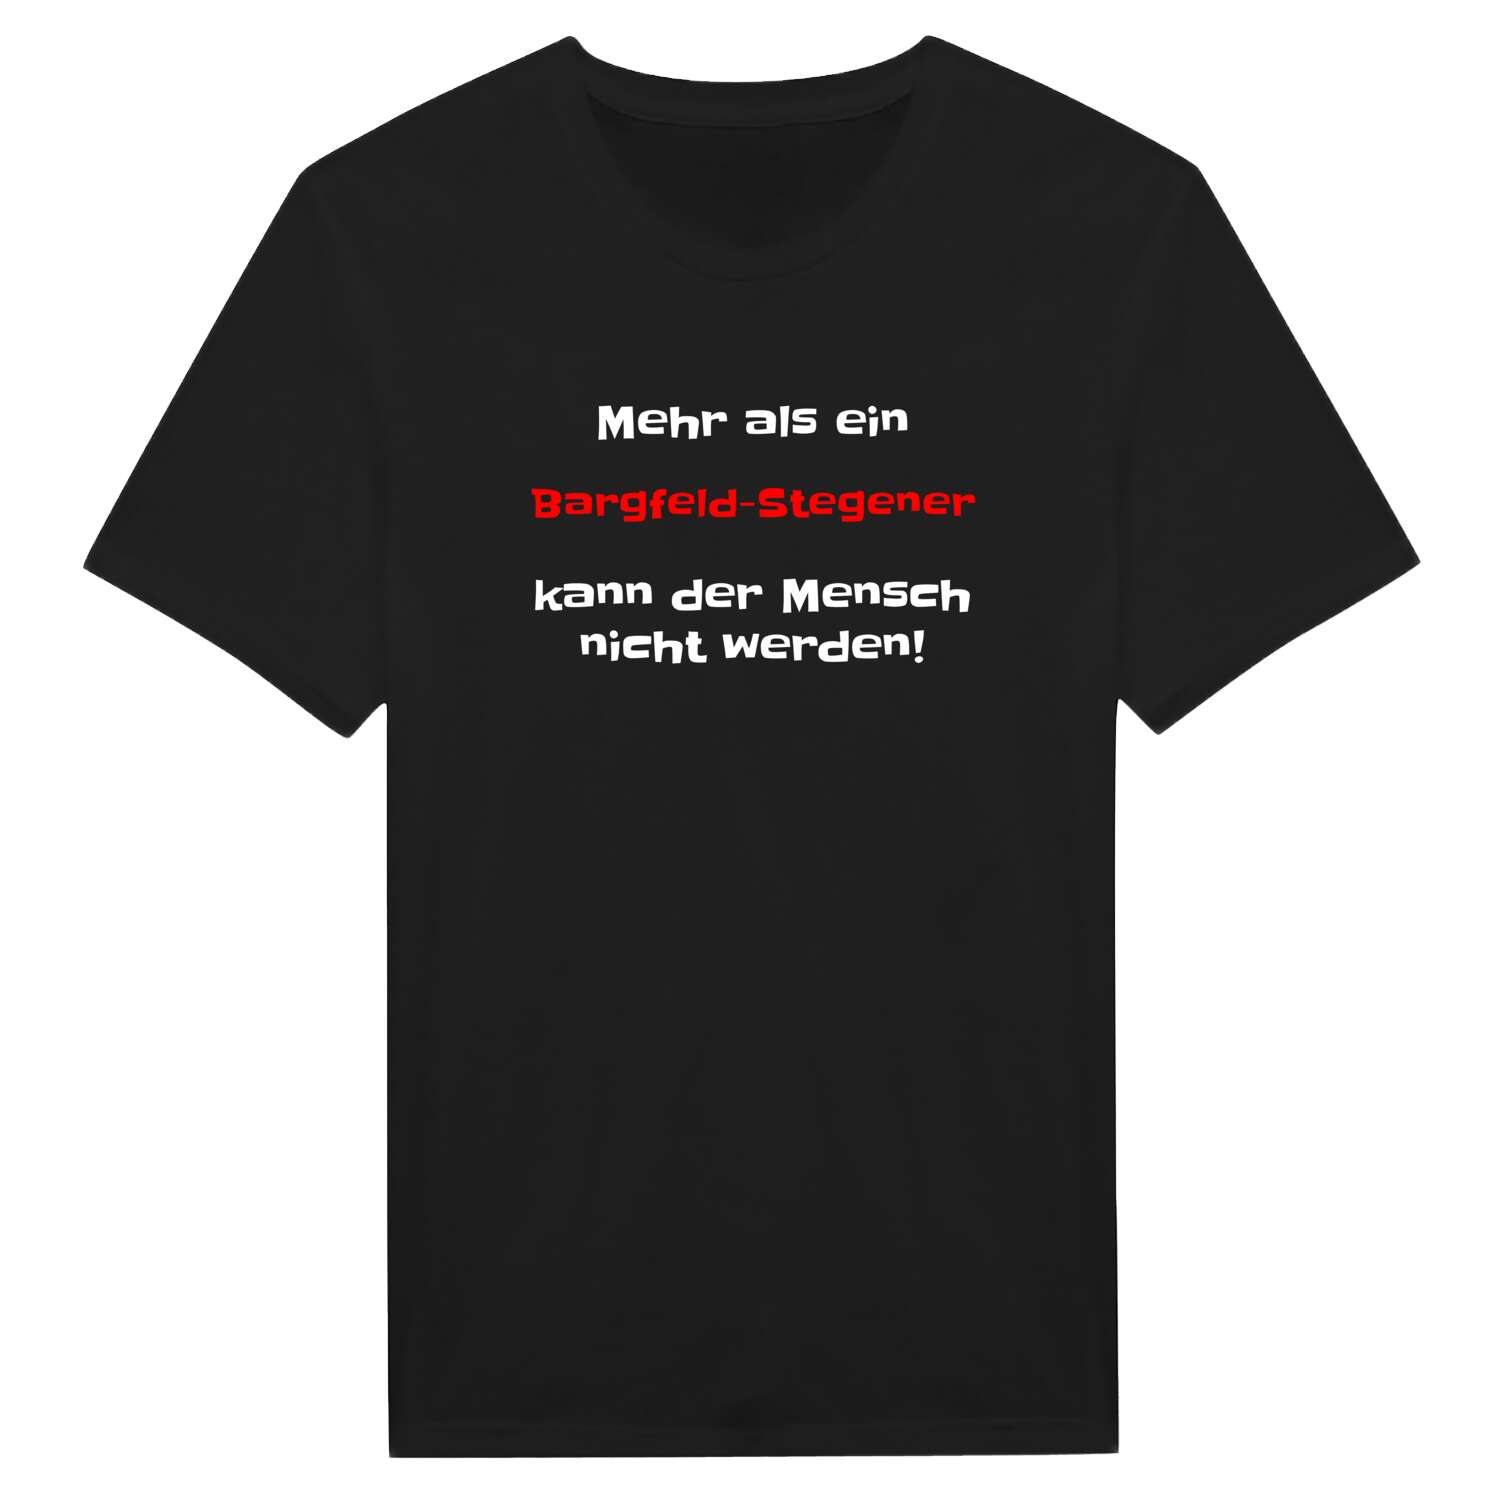 Bargfeld-Stegen T-Shirt »Mehr als ein«